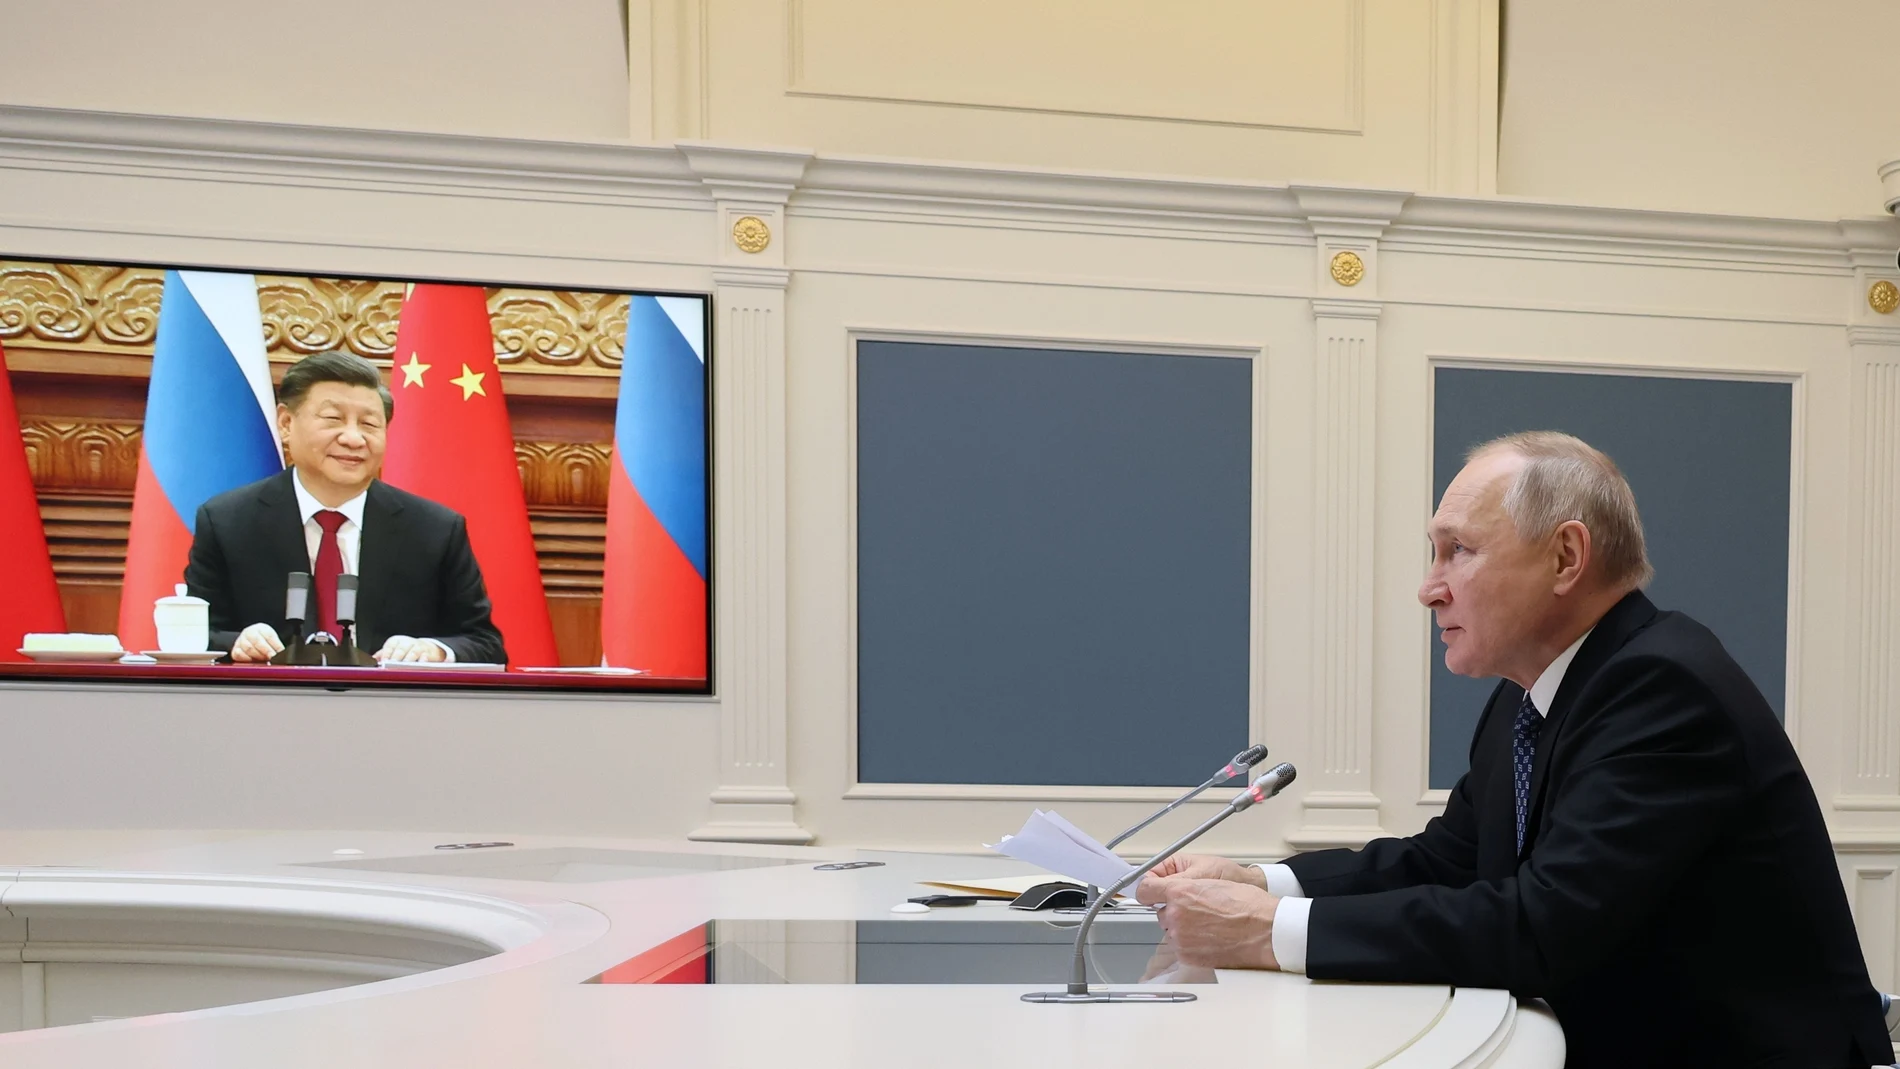 El presidente ruso, Vladimir Putin, habla durante una reunión con el presidente chino, Xi Jinping, visto en pantalla, a través de una videoconferencia en el Kremlin en Moscú